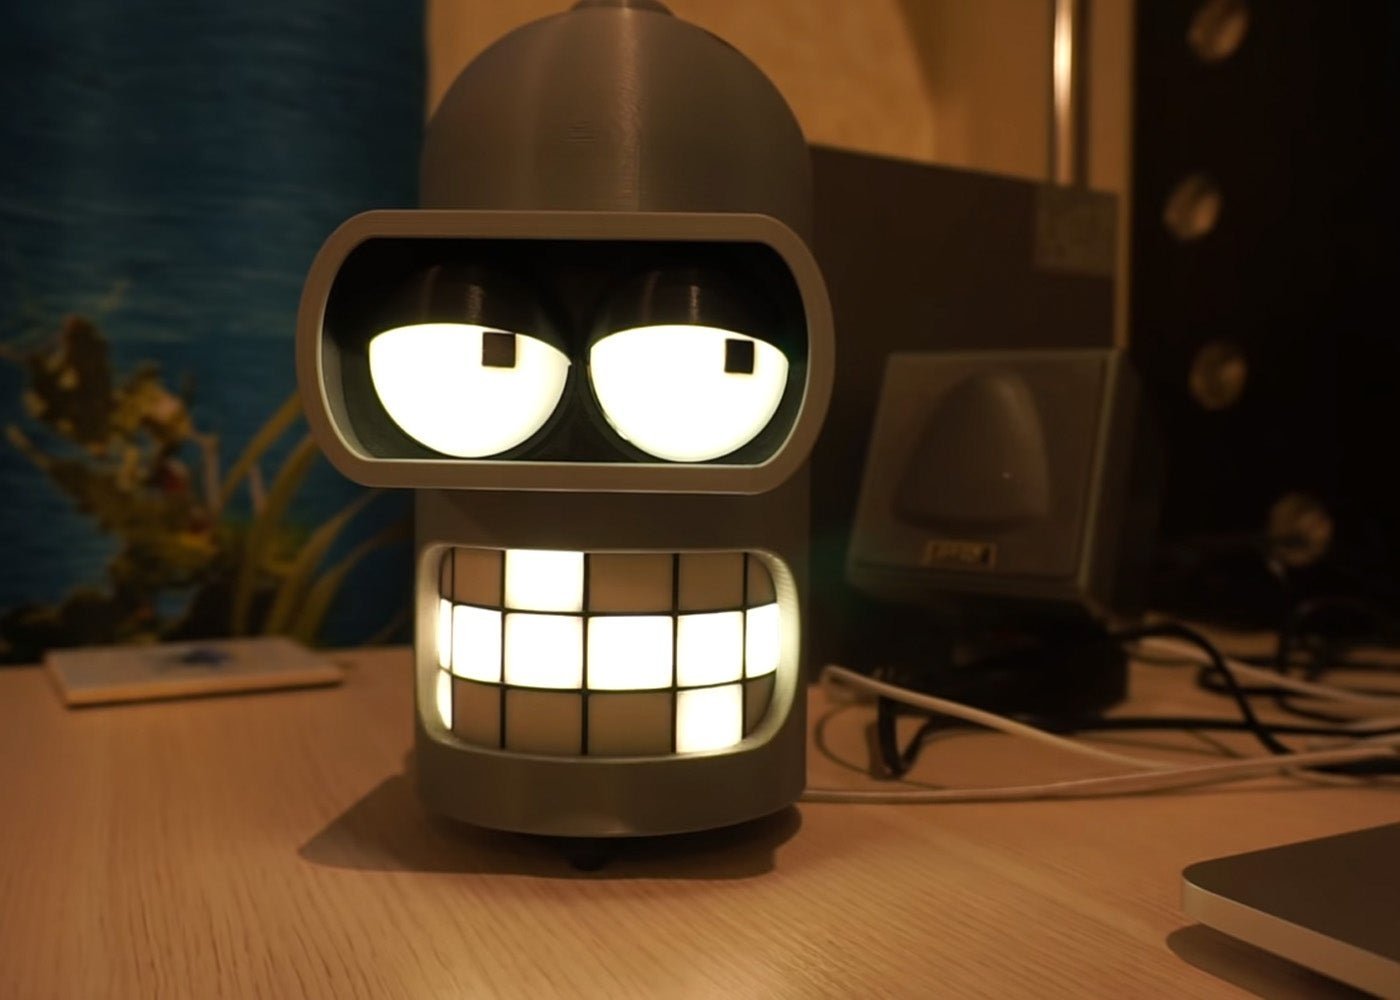 Altavoz inteligente con forma de Bender de Futurama